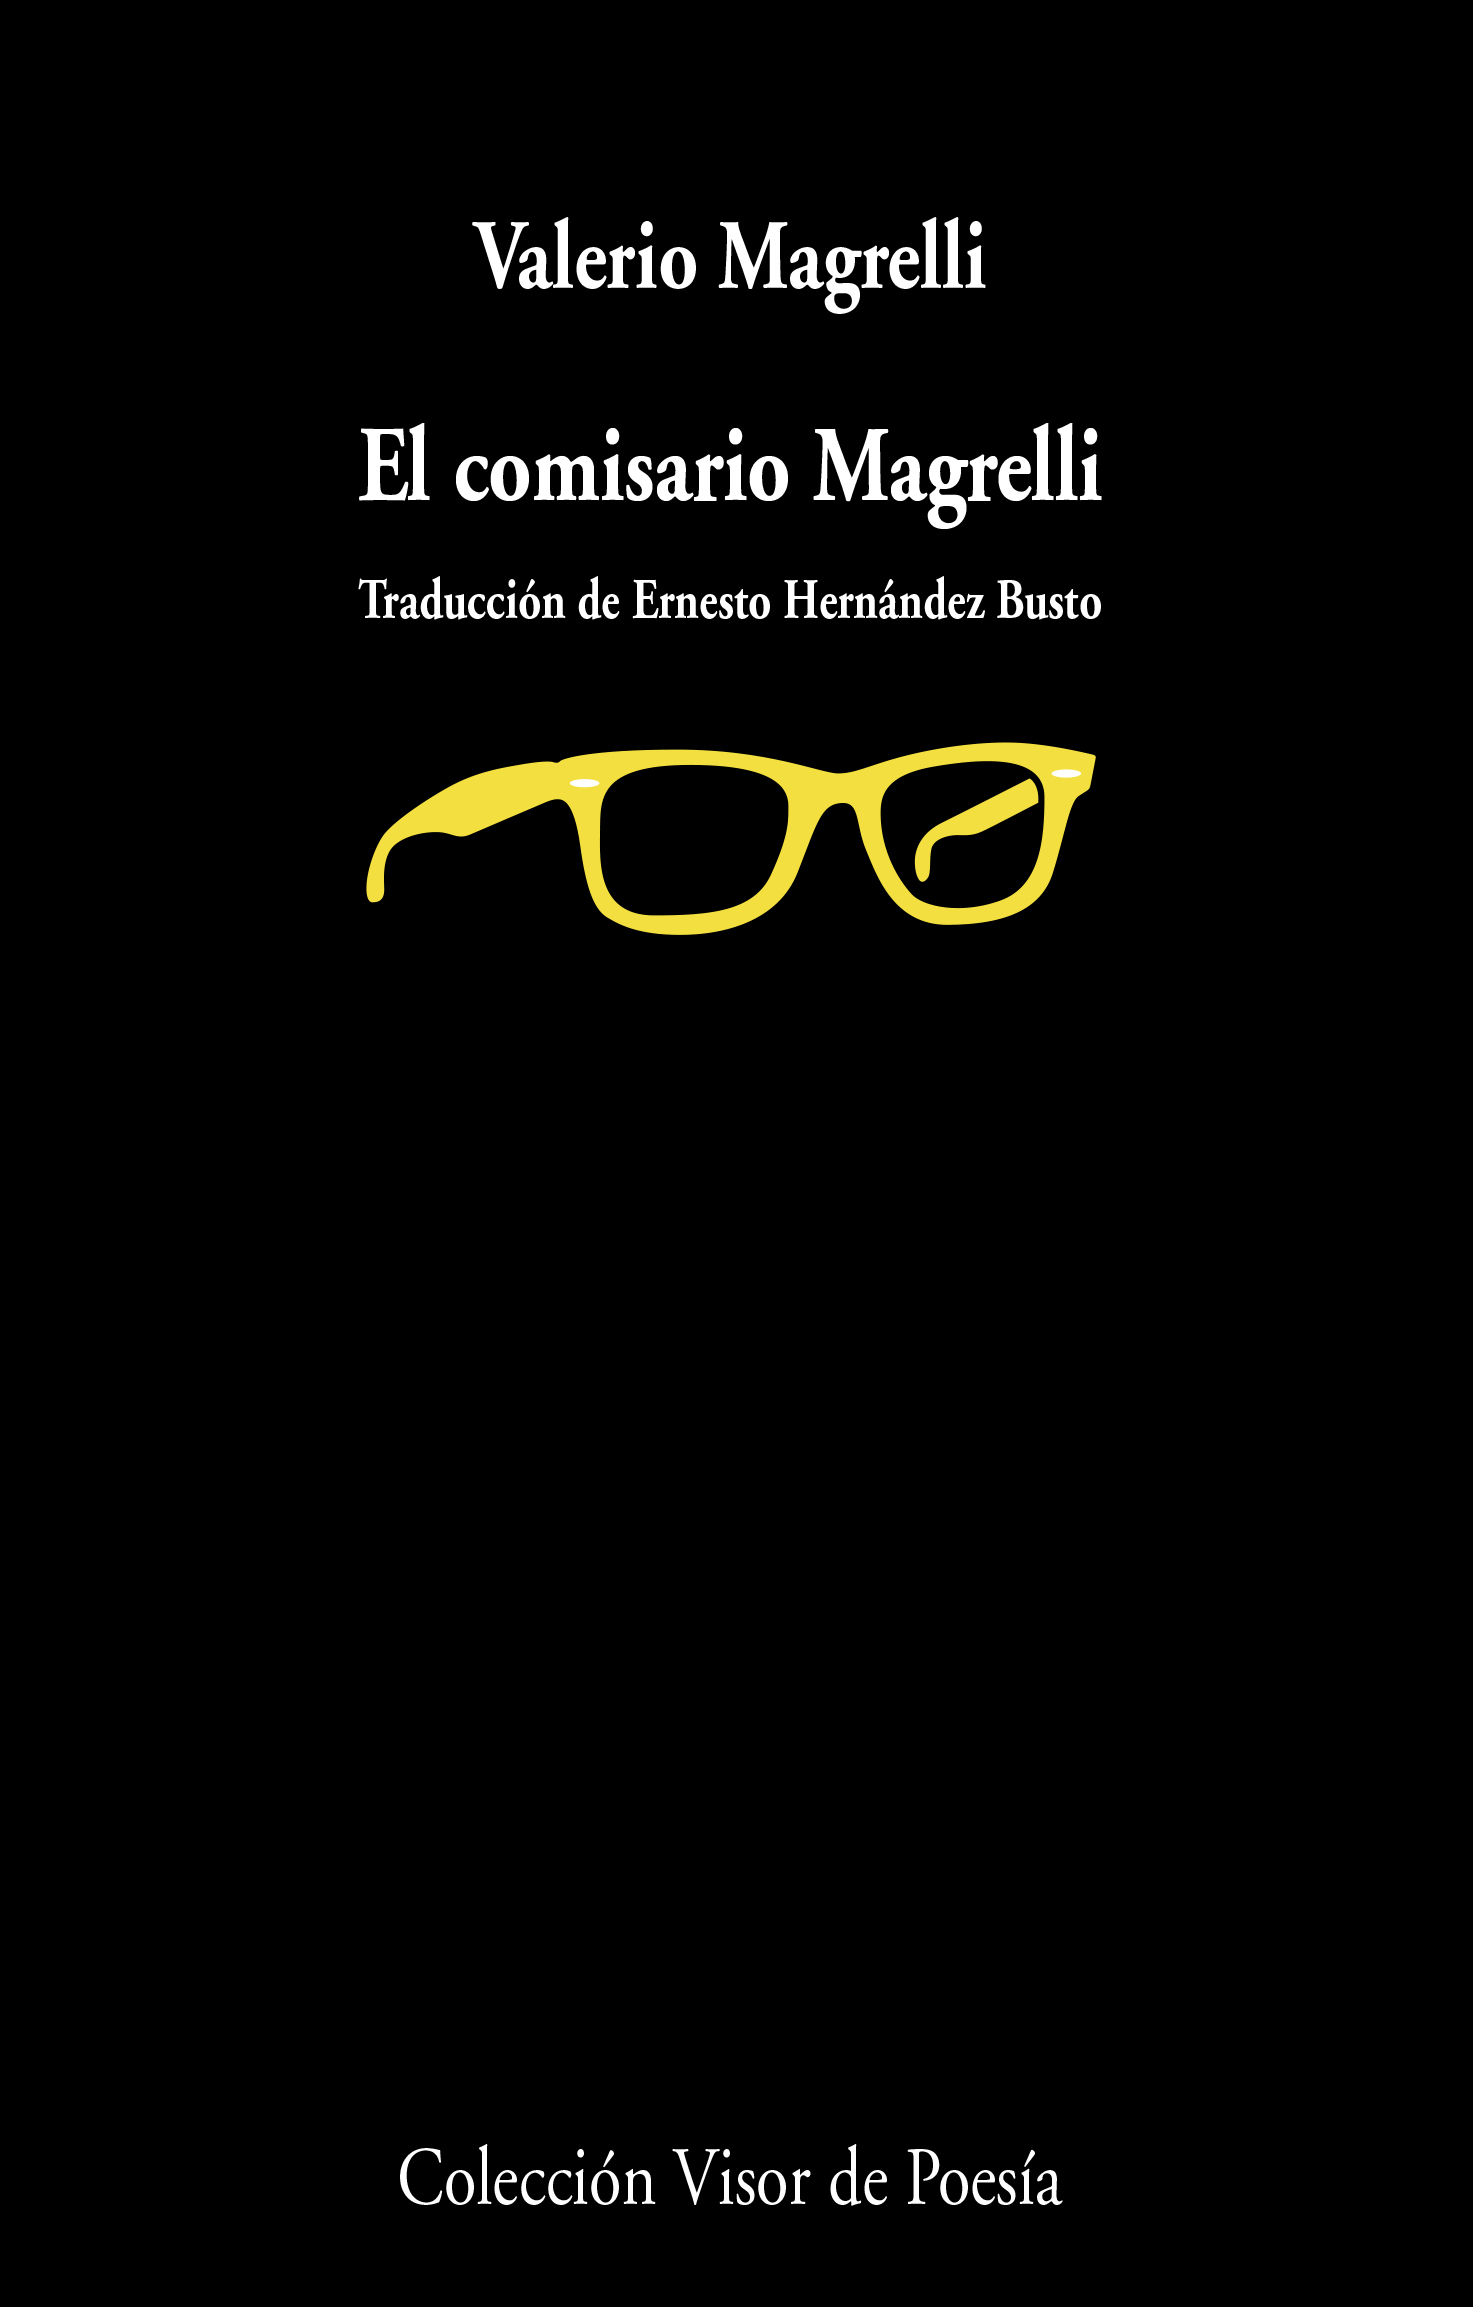 5 poemas de Valerio Magrelli